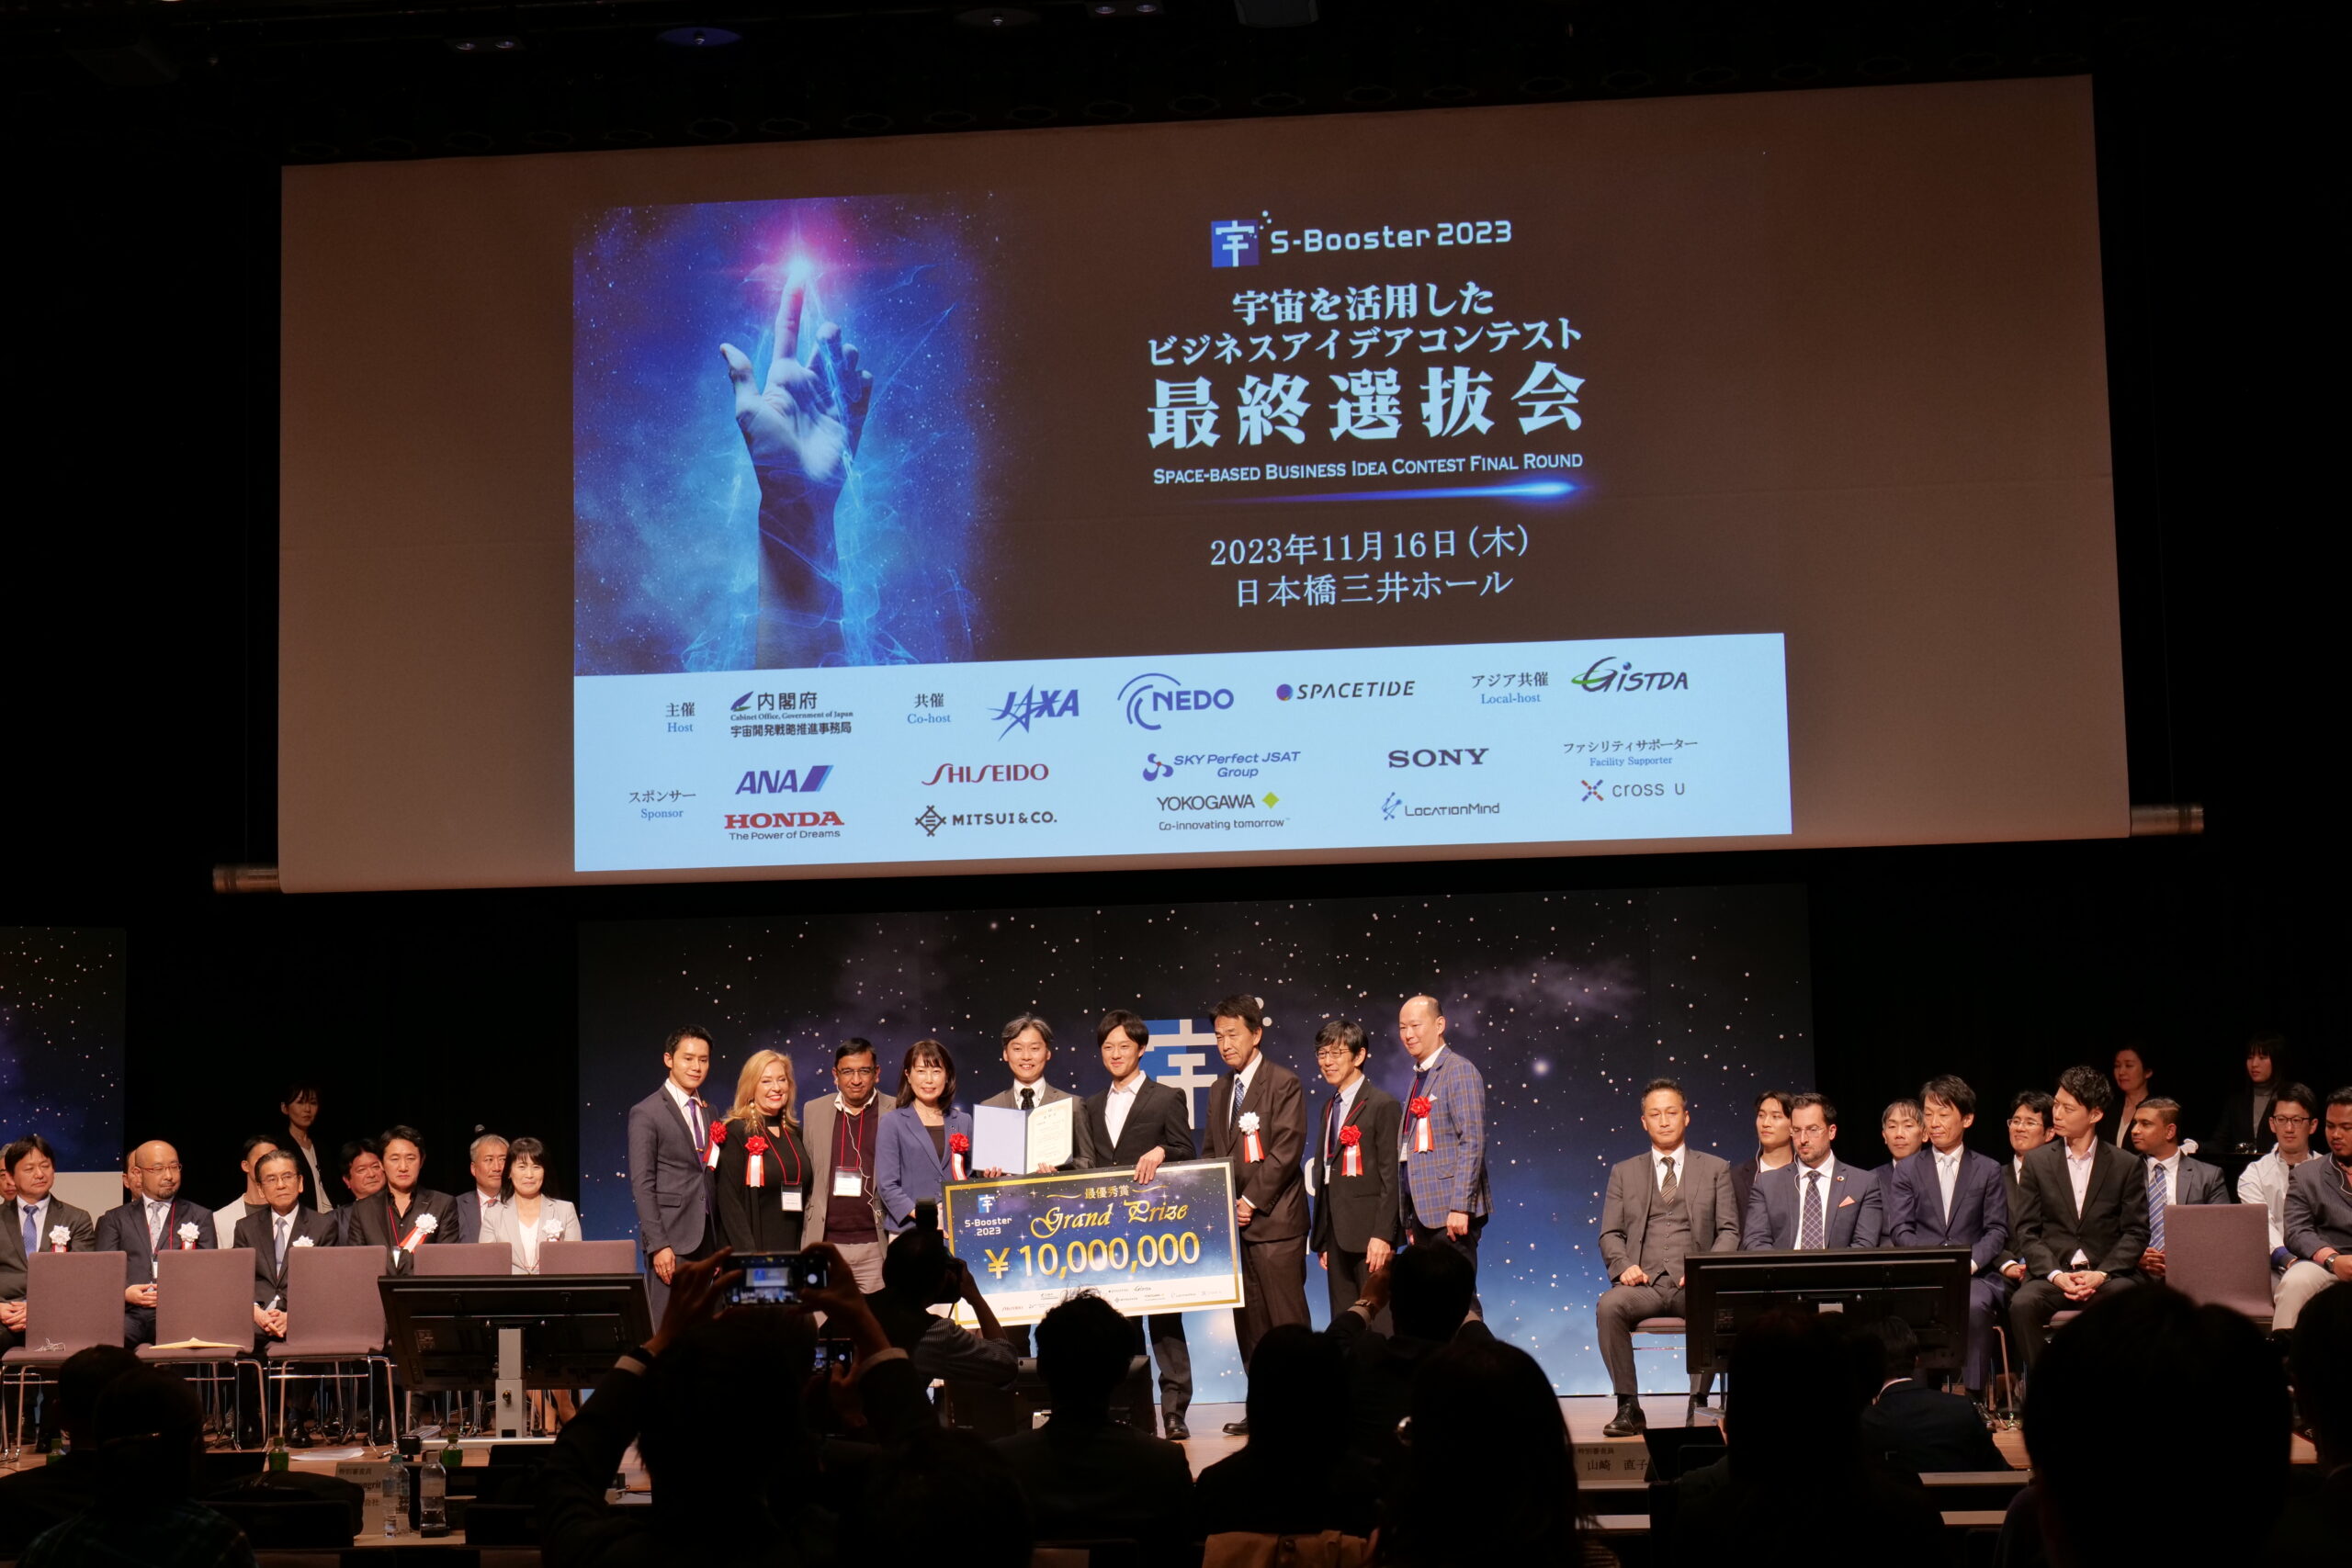 宇宙のビジコンS-Booster 2023、小惑星資源探査のアイデアが最優秀賞を受賞